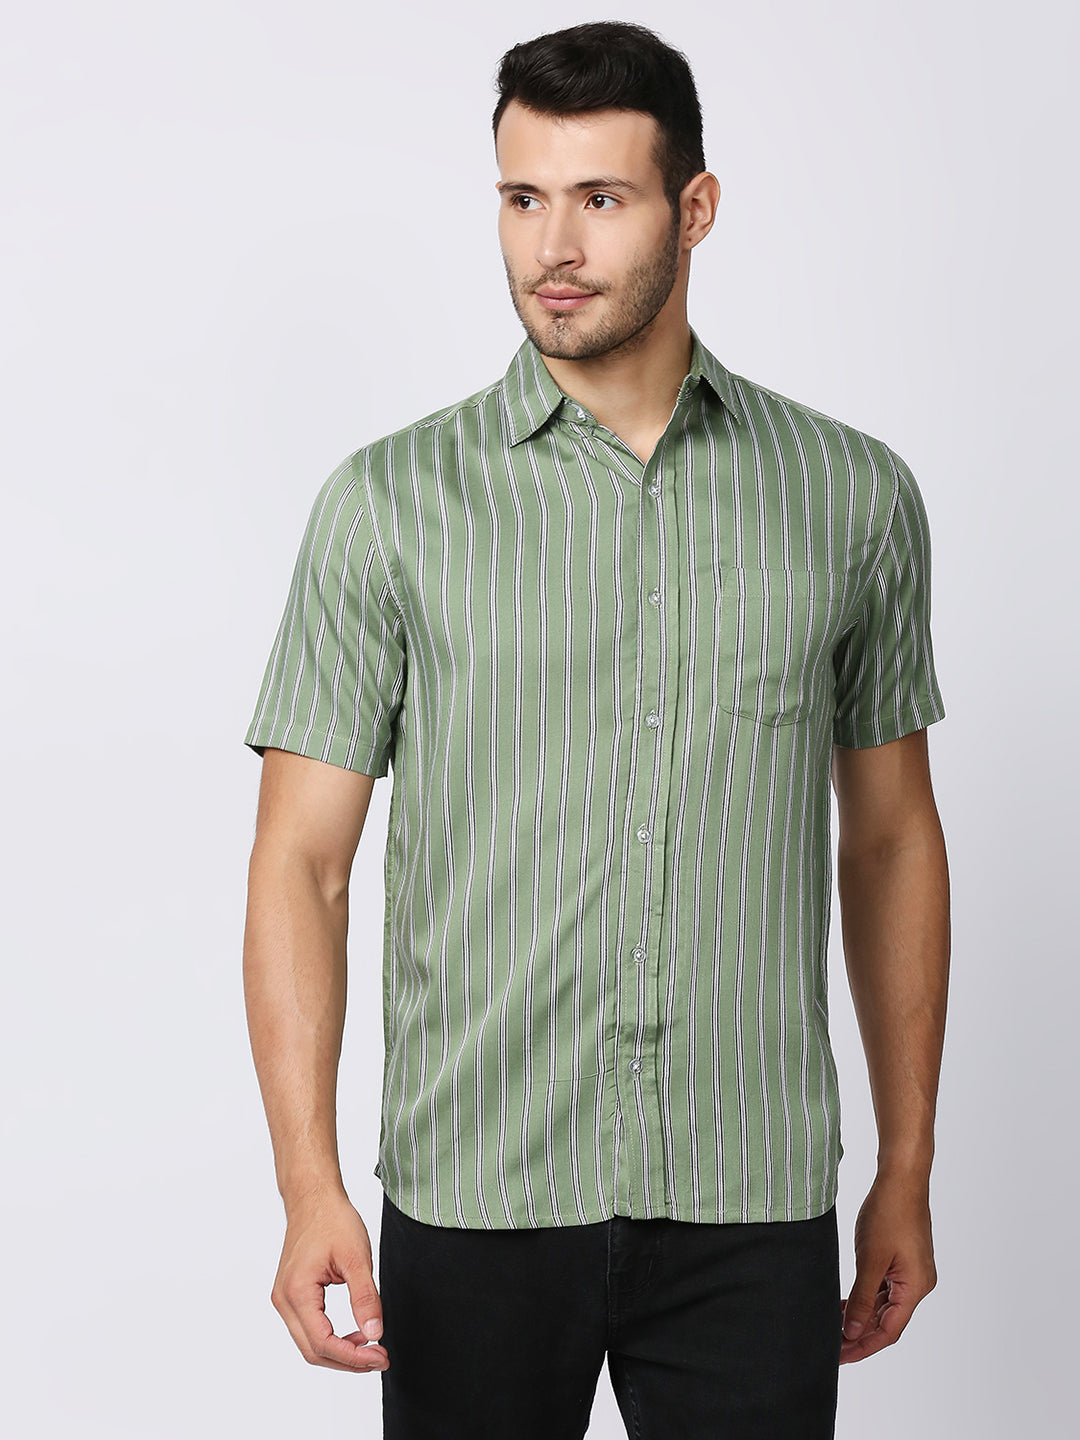 Zest Green Pinstripes Half Sleeve Shirt